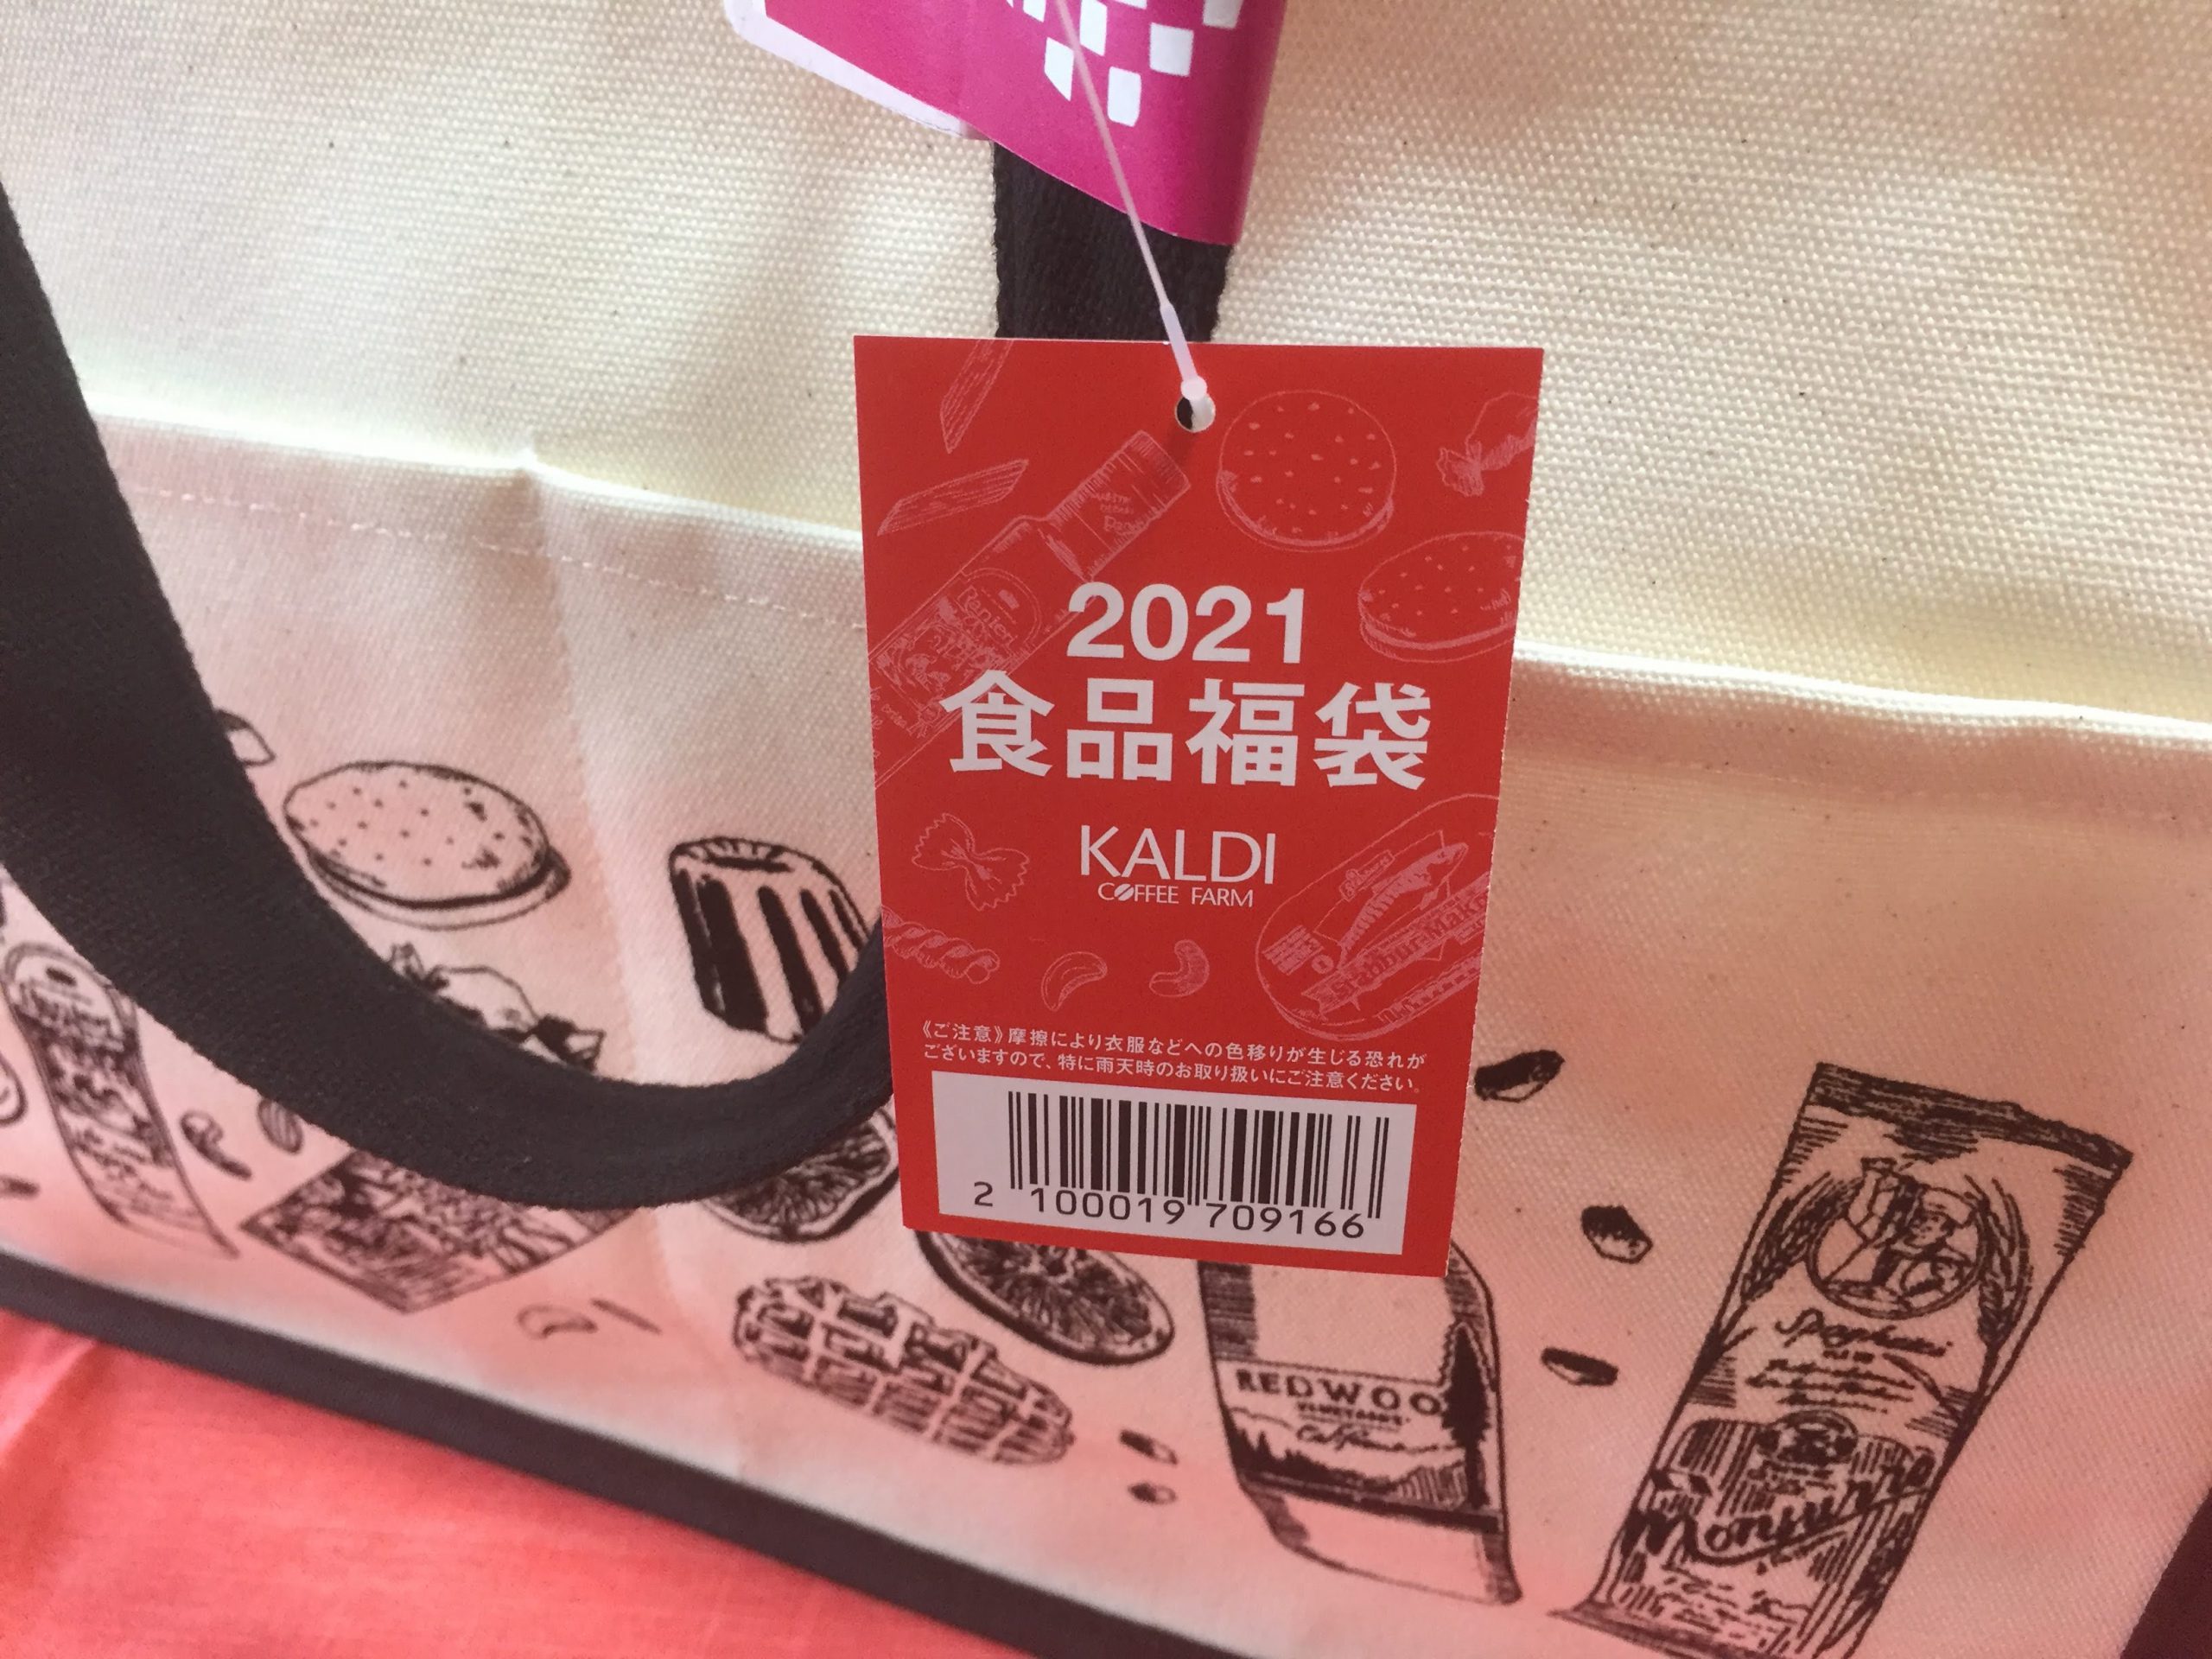 【カルディ福袋】KALDI 2021年食品福袋を買って開封しました。